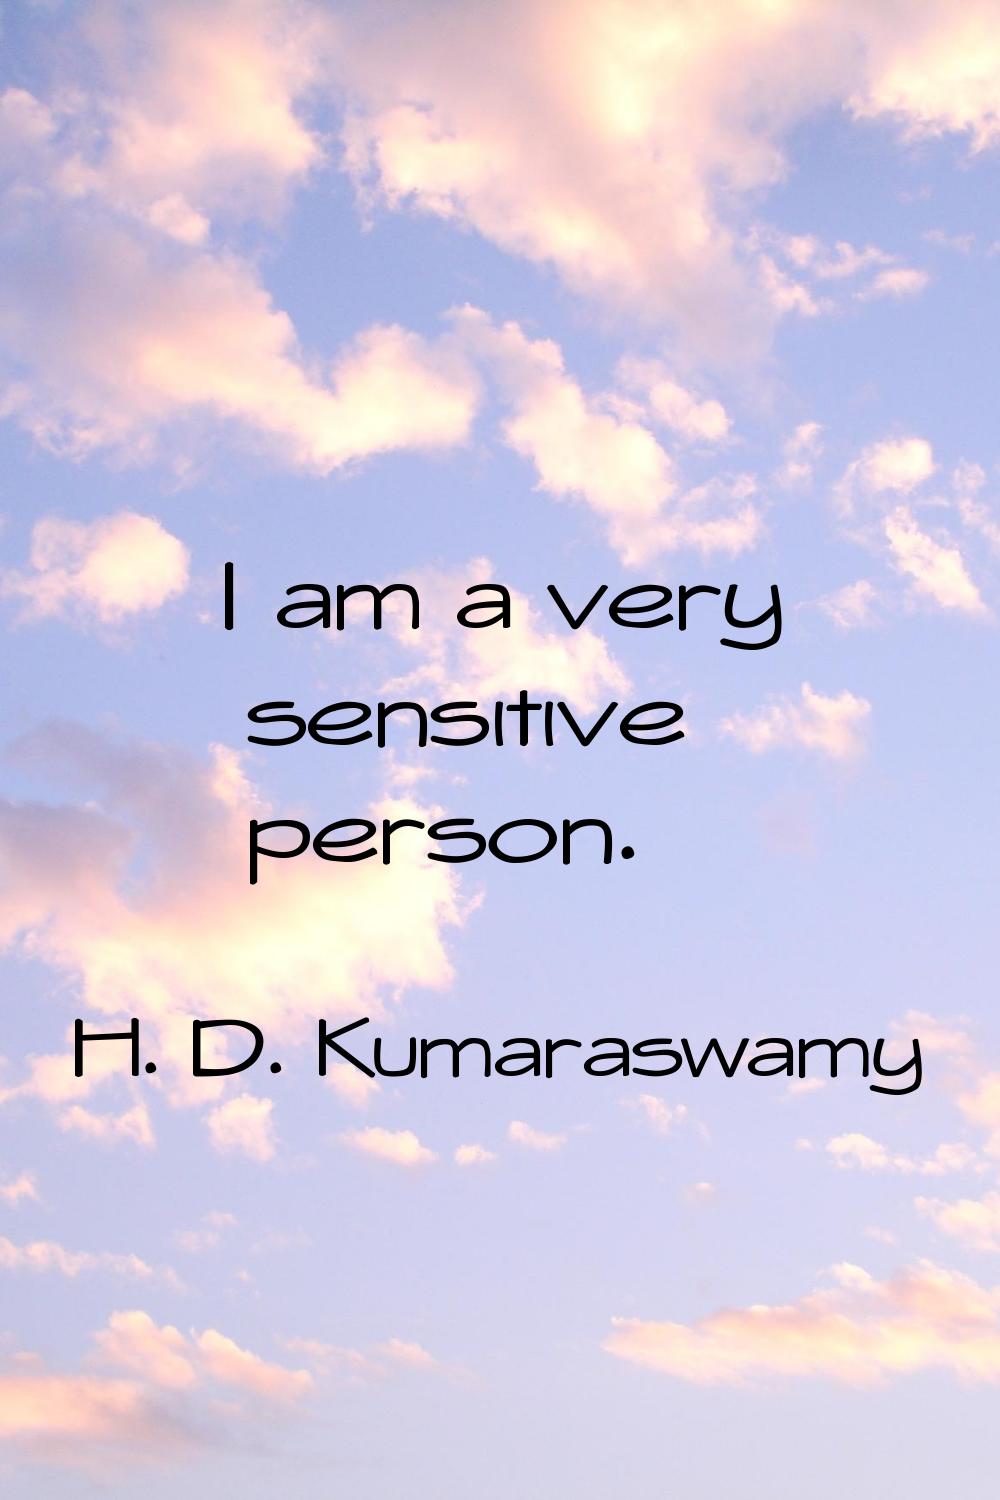 I am a very sensitive person.